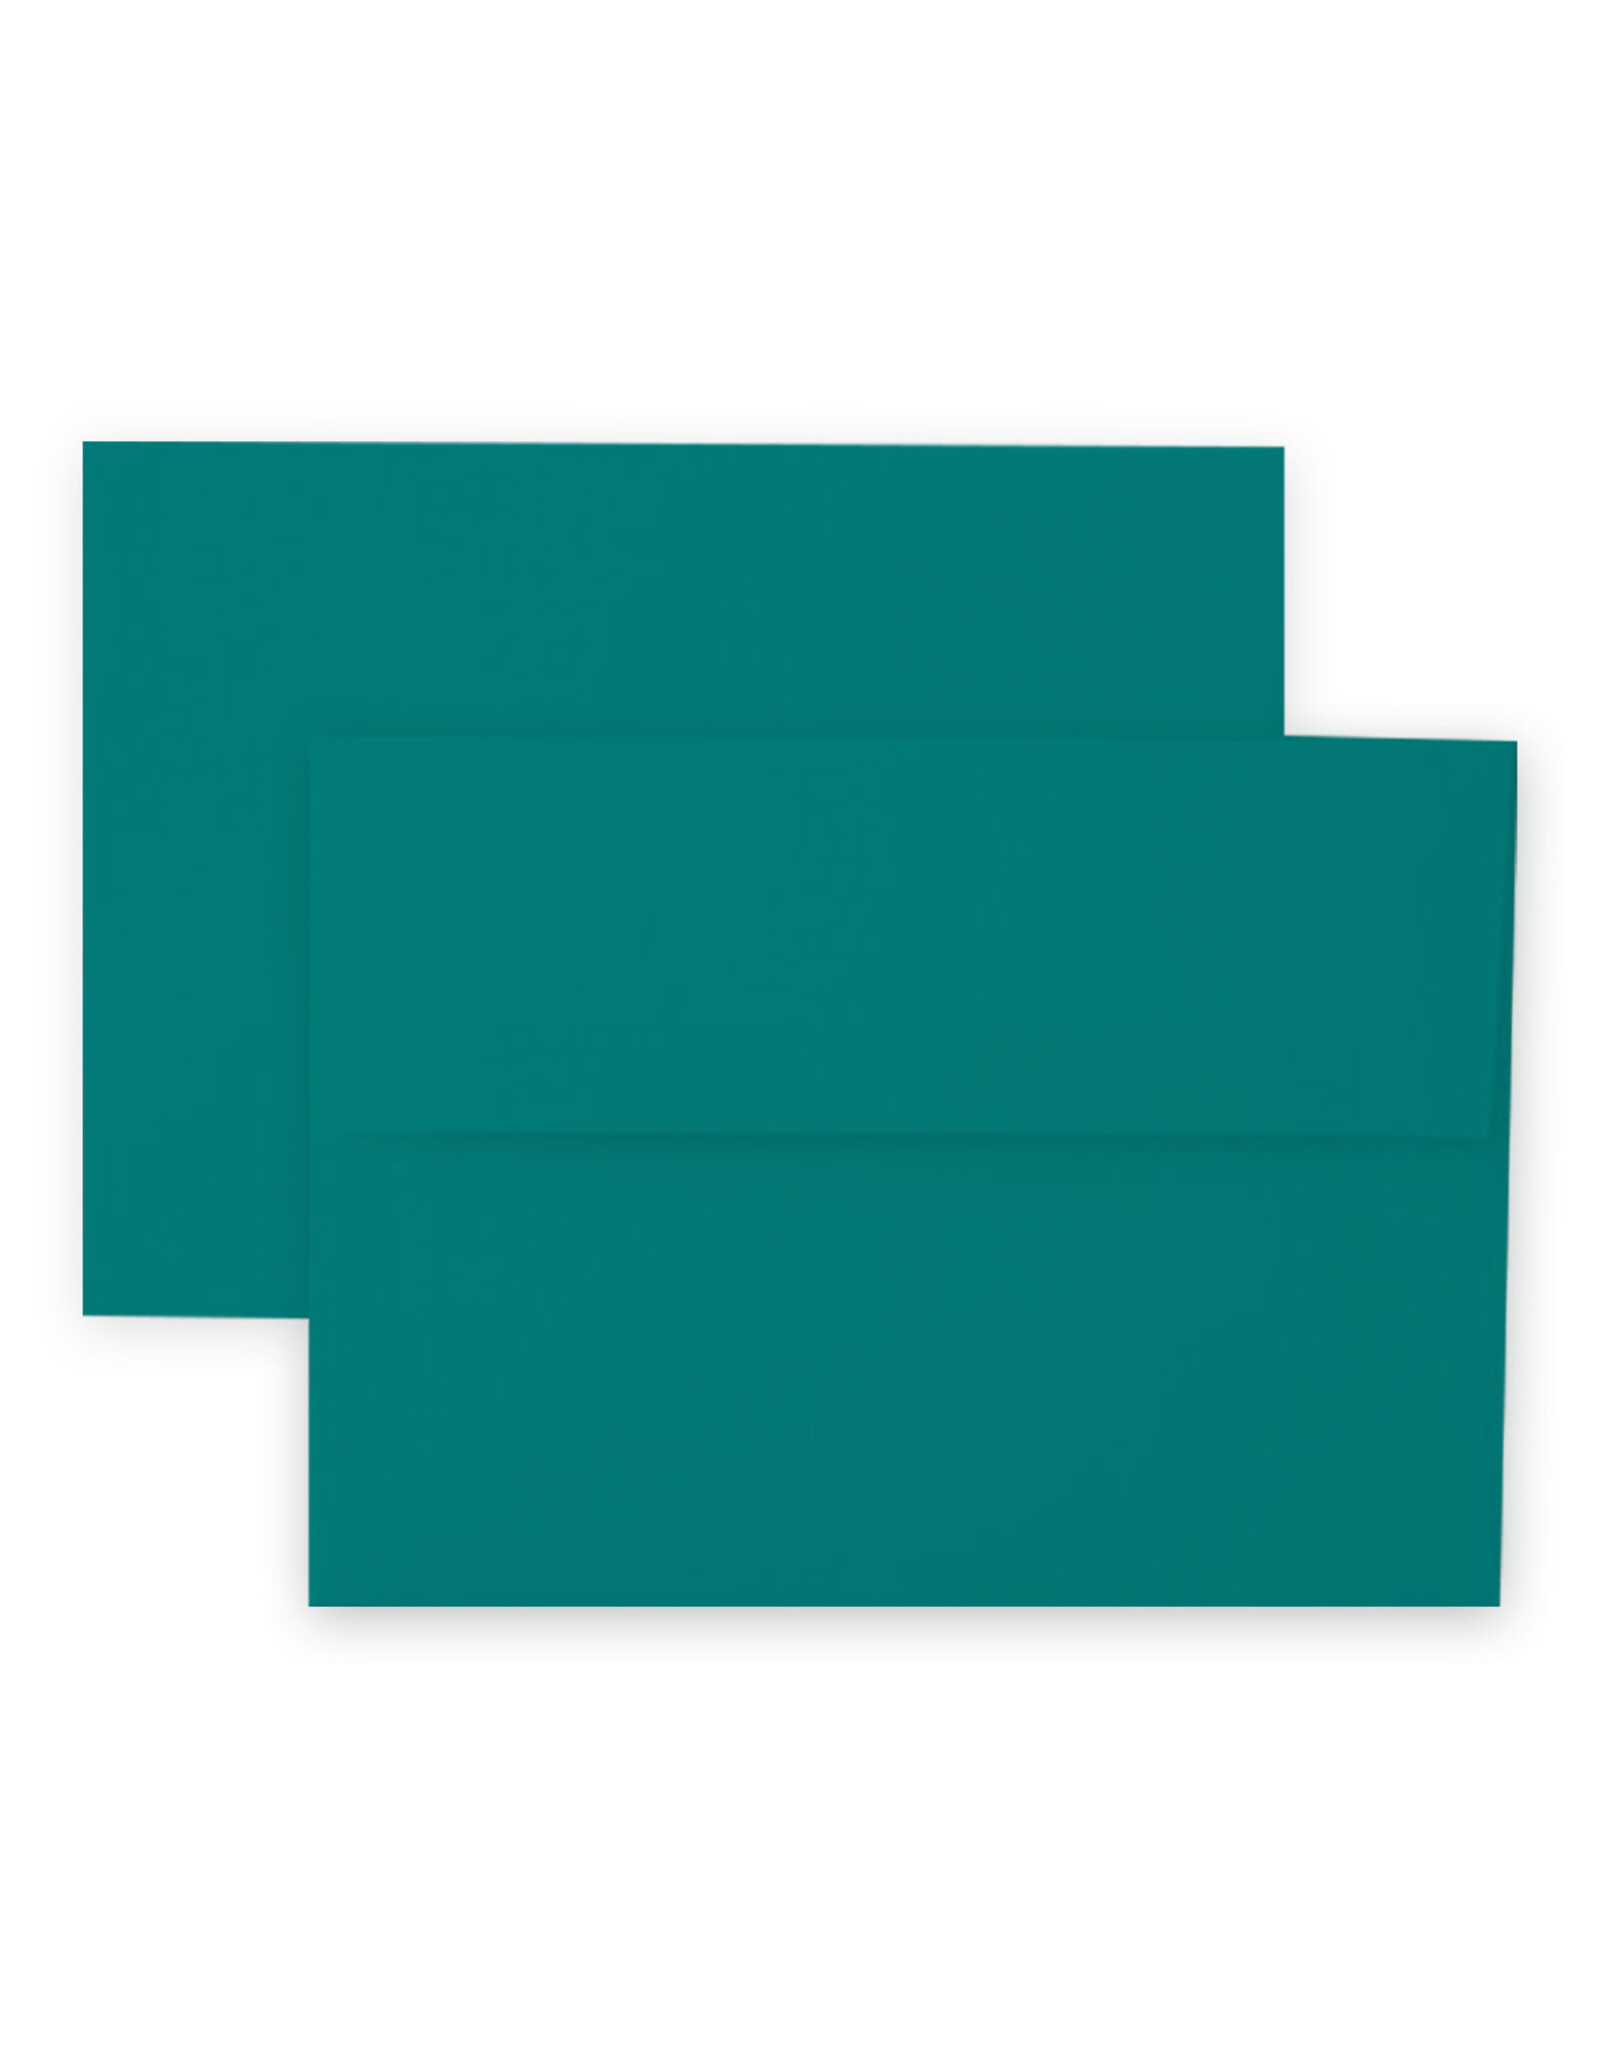 ALTENEW Craft Essentials- A2 Envelopes 12 pcs- Emerald